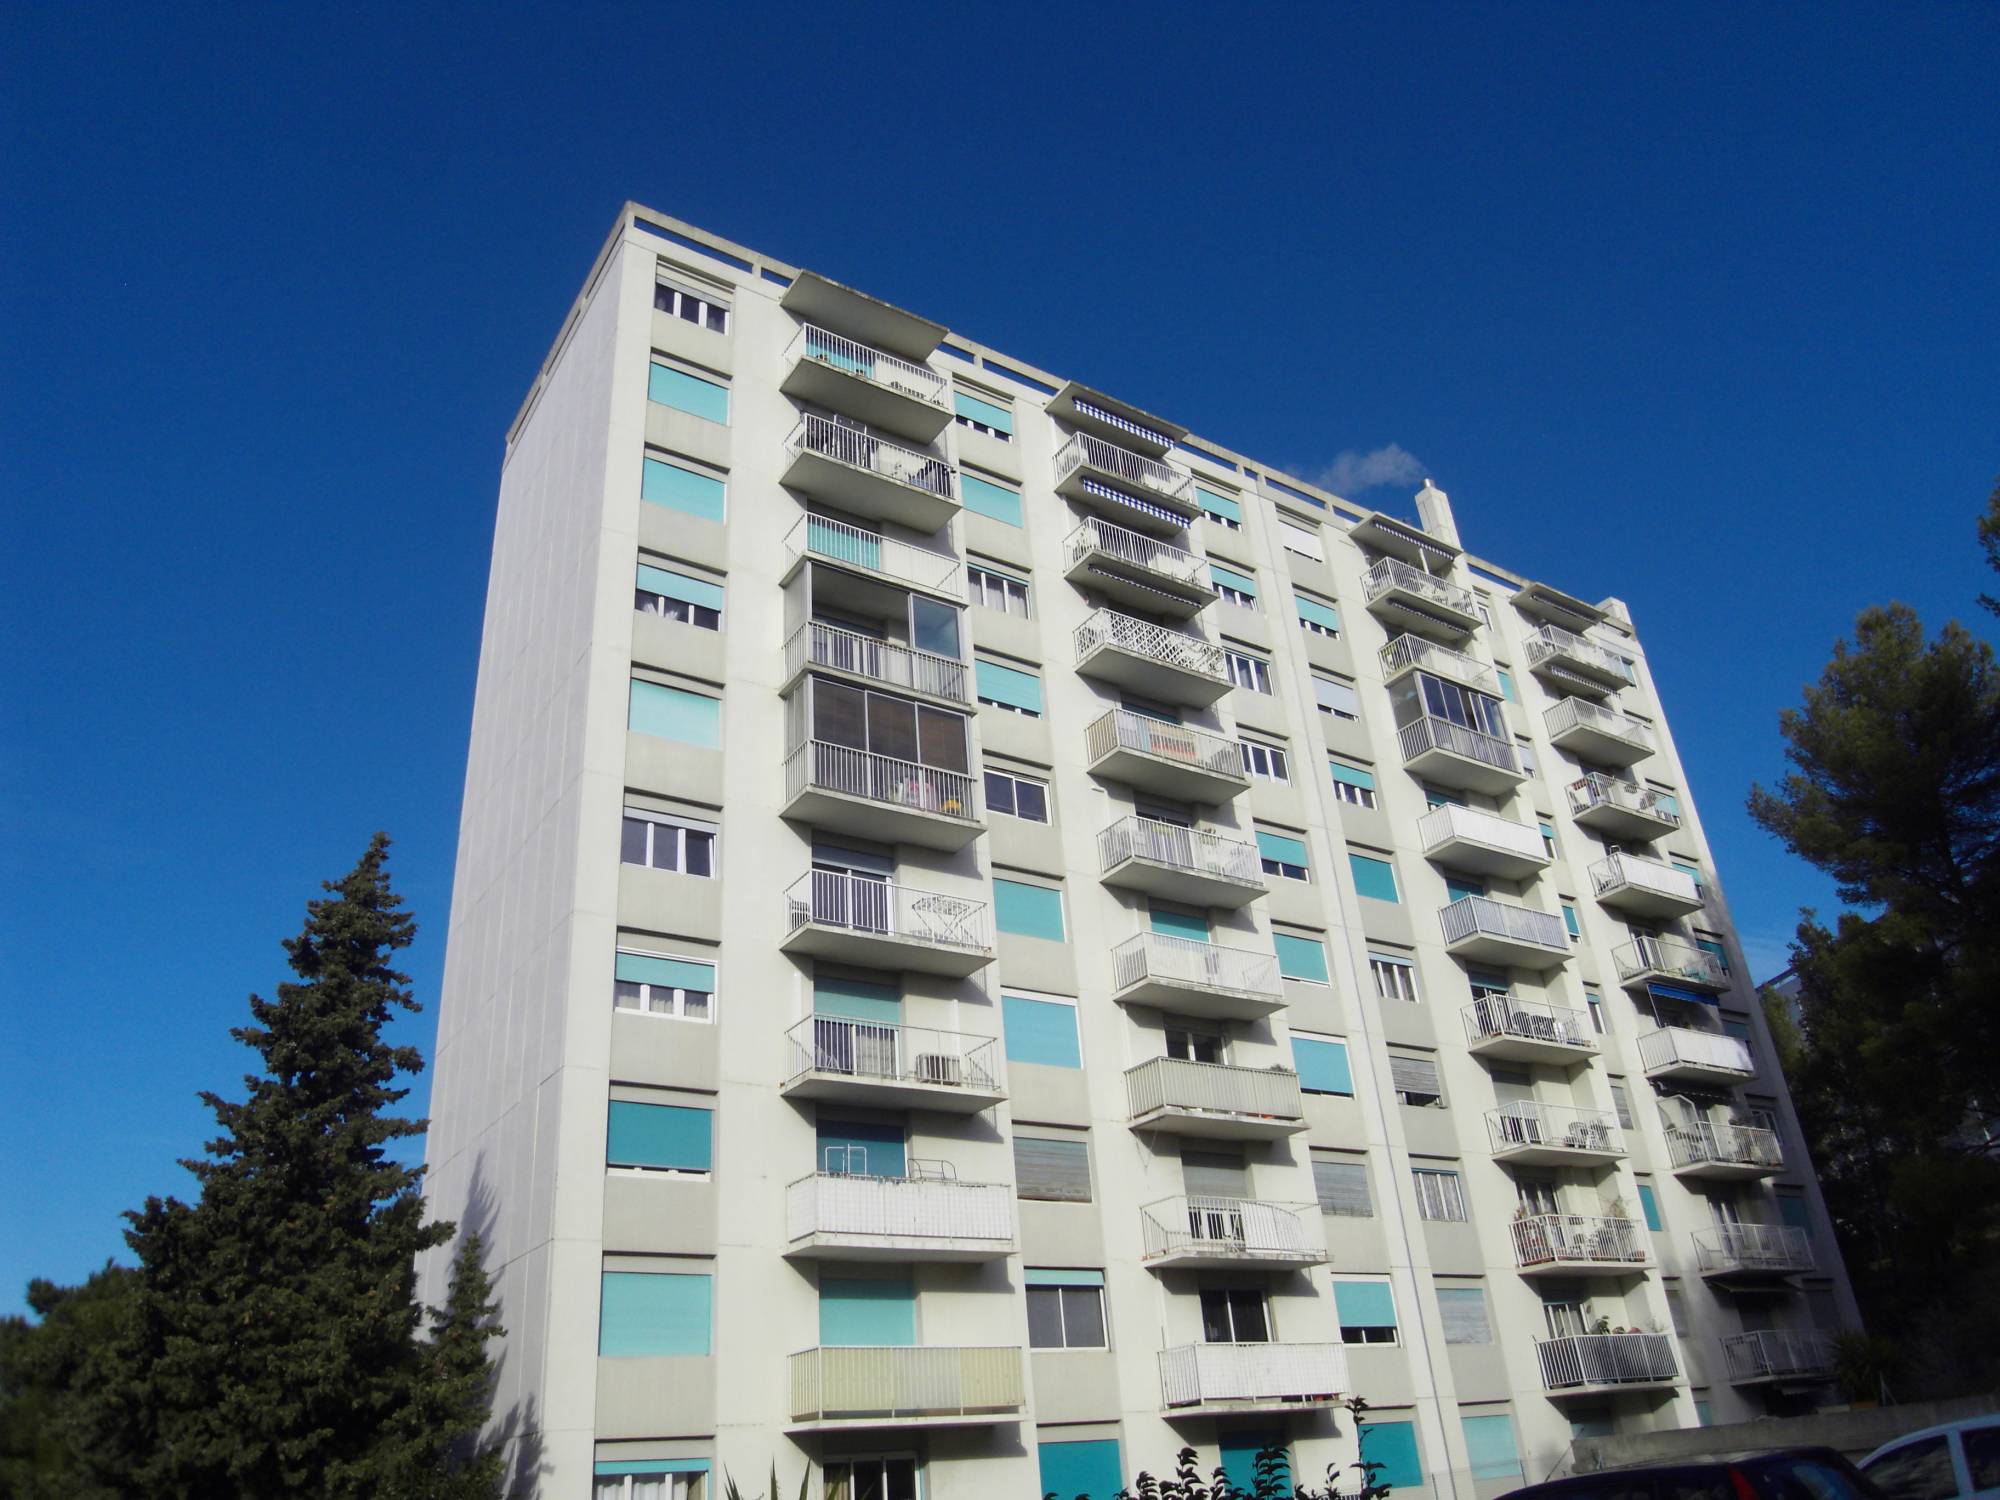 A louer appartement 3 pièces avec cuisine aménagée balcon et stationnement libre Les Olives 13013 Marseille 